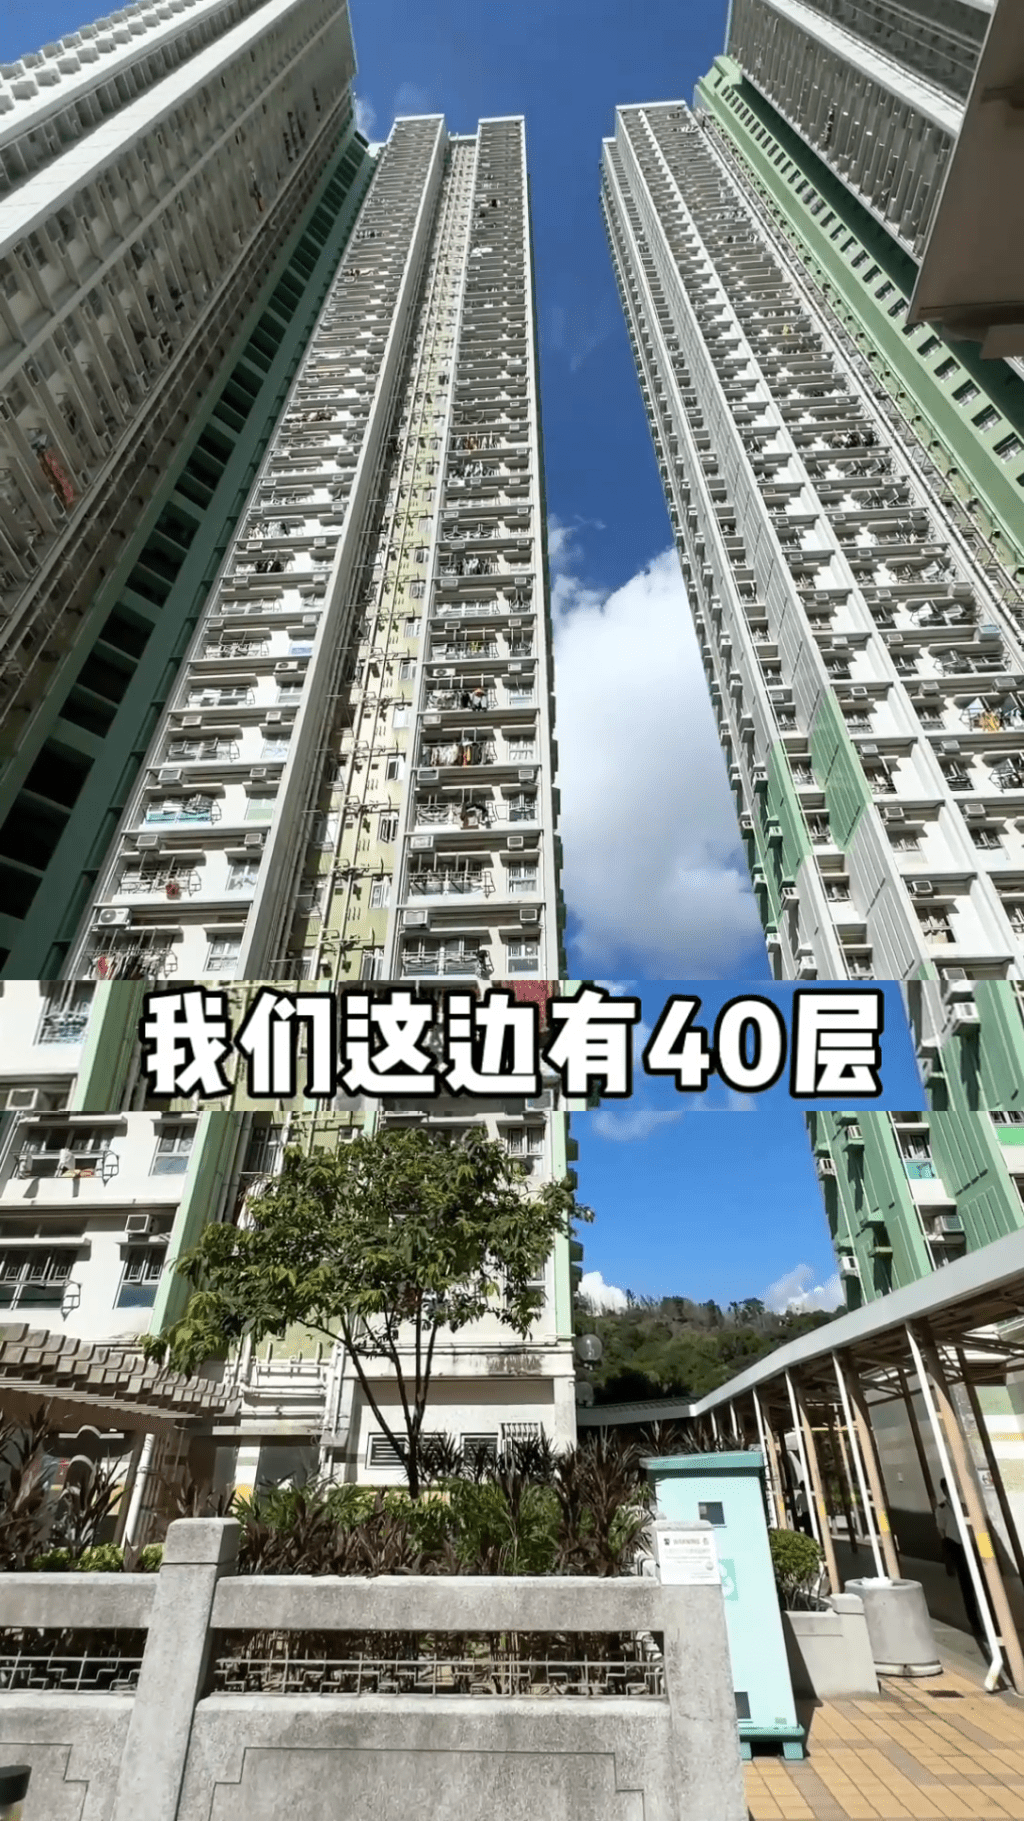 港媽介紹她們住的樓宇有40層。